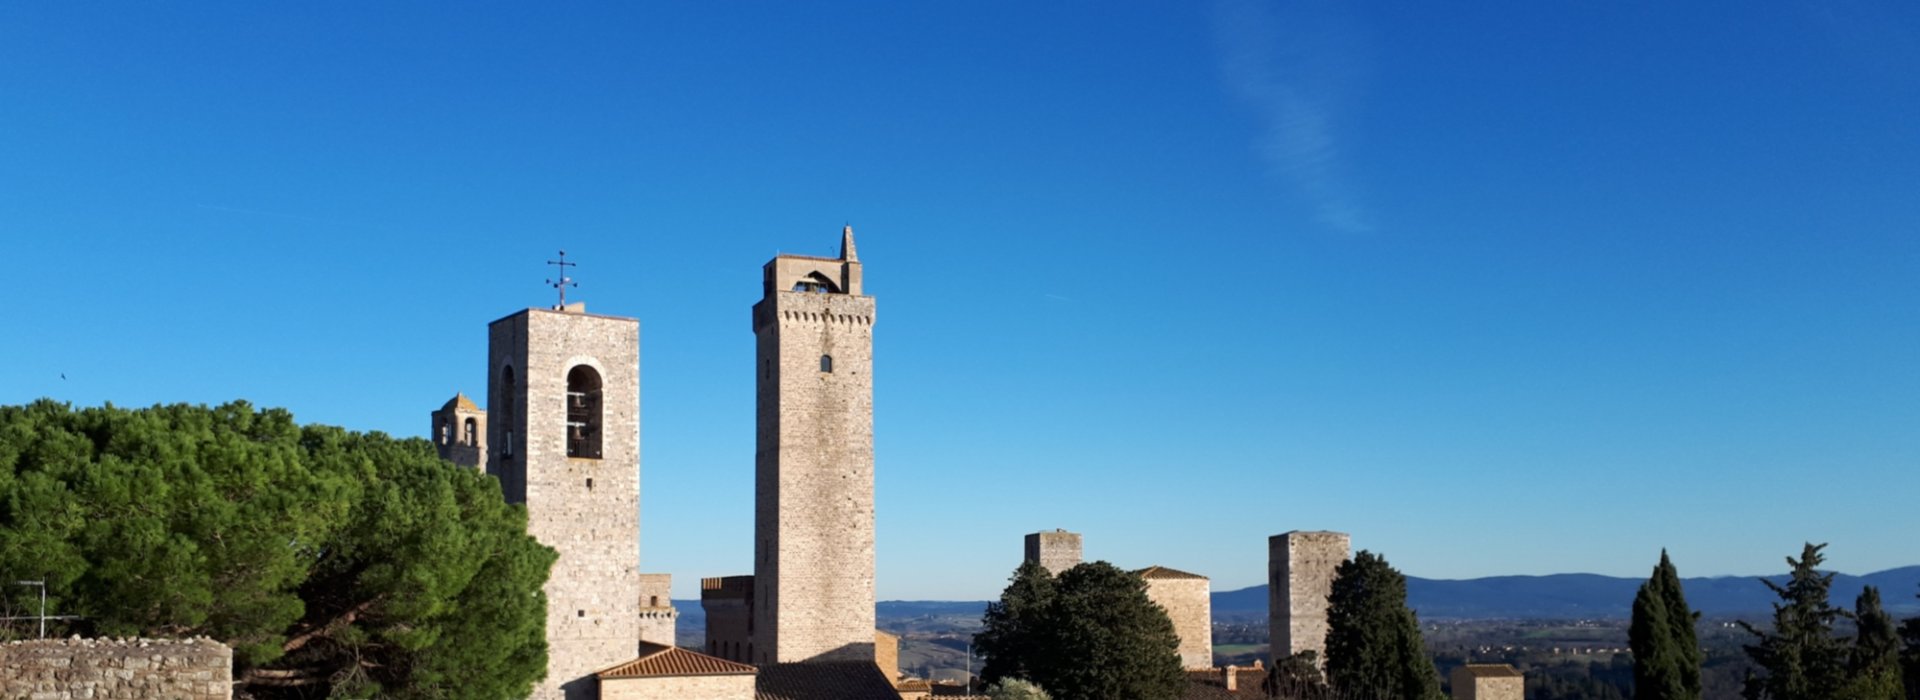 Passeggiata guidata lungo le mura di San Gimignano